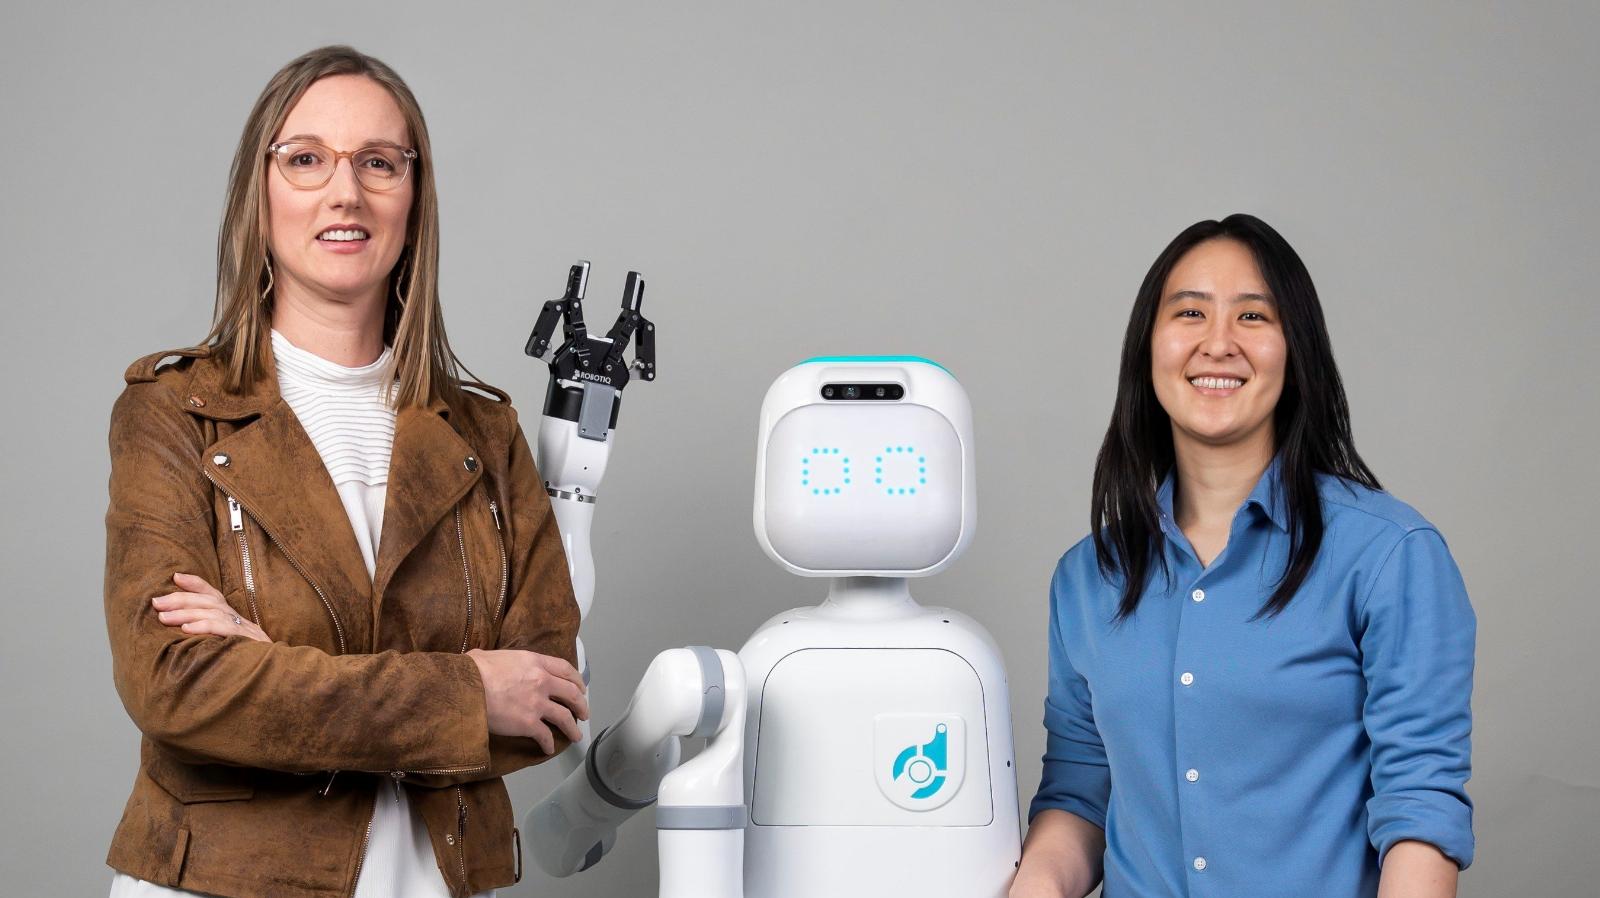 Diligent raises $25 million to triple its nursing robot’s reach